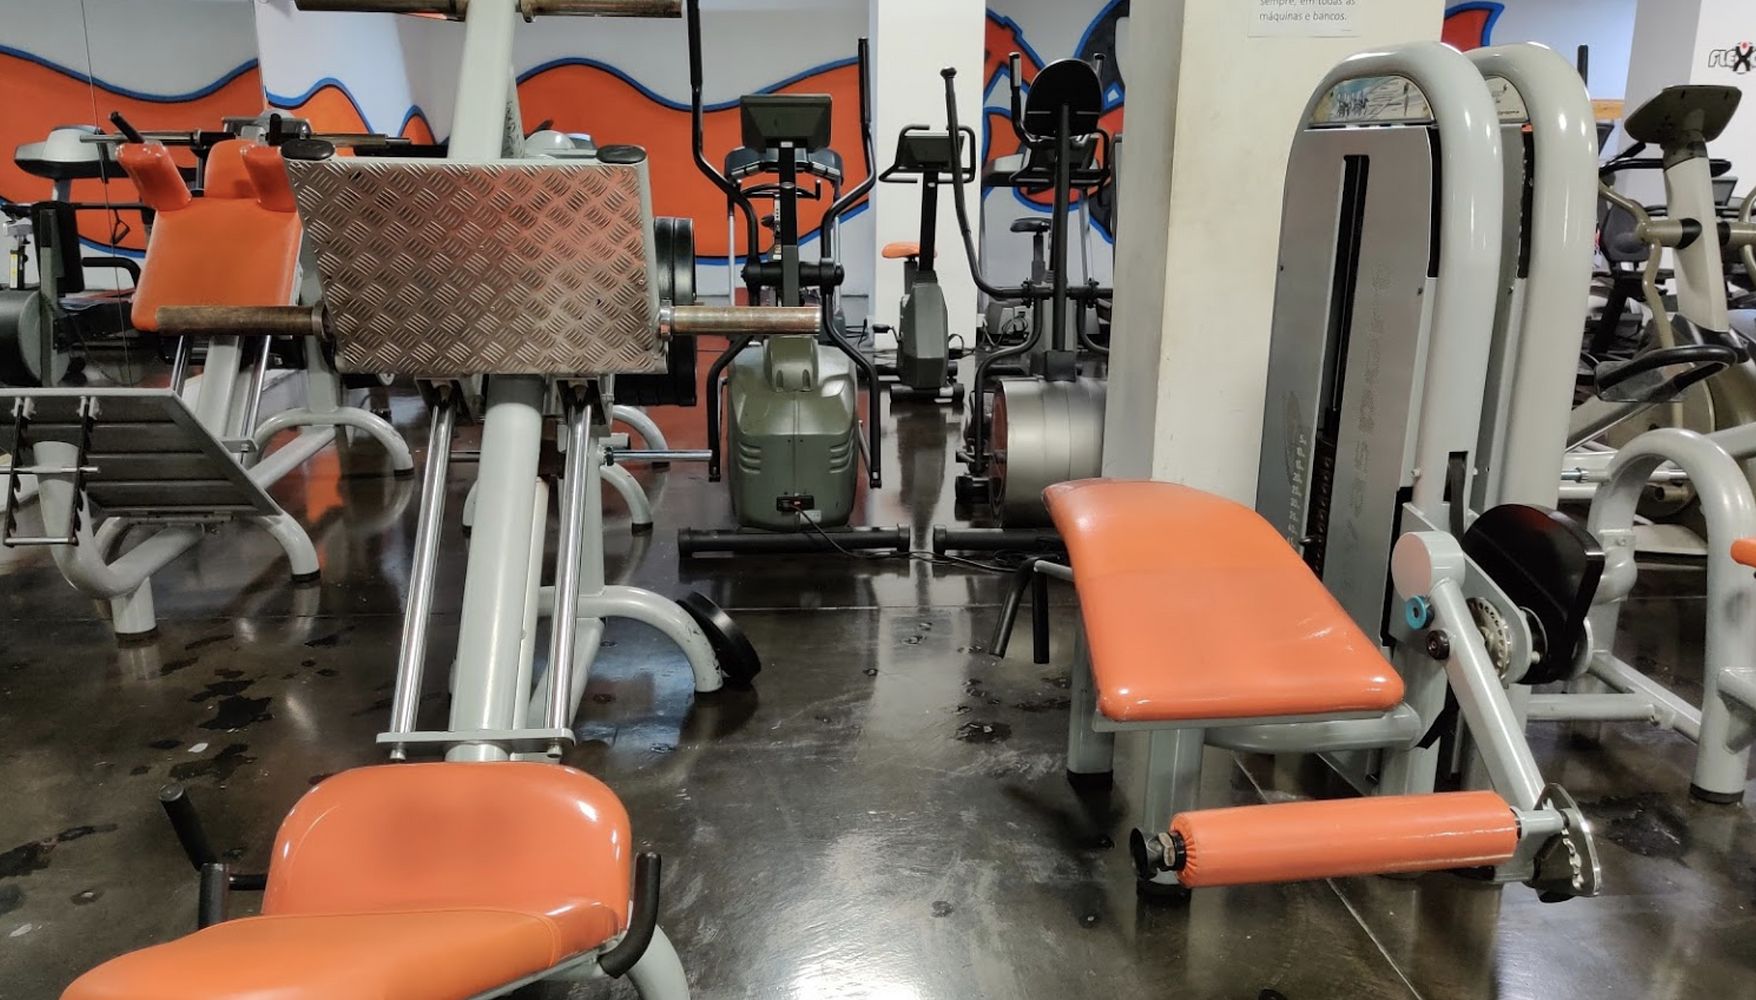 Flex Gym gym in Braga, Portugal